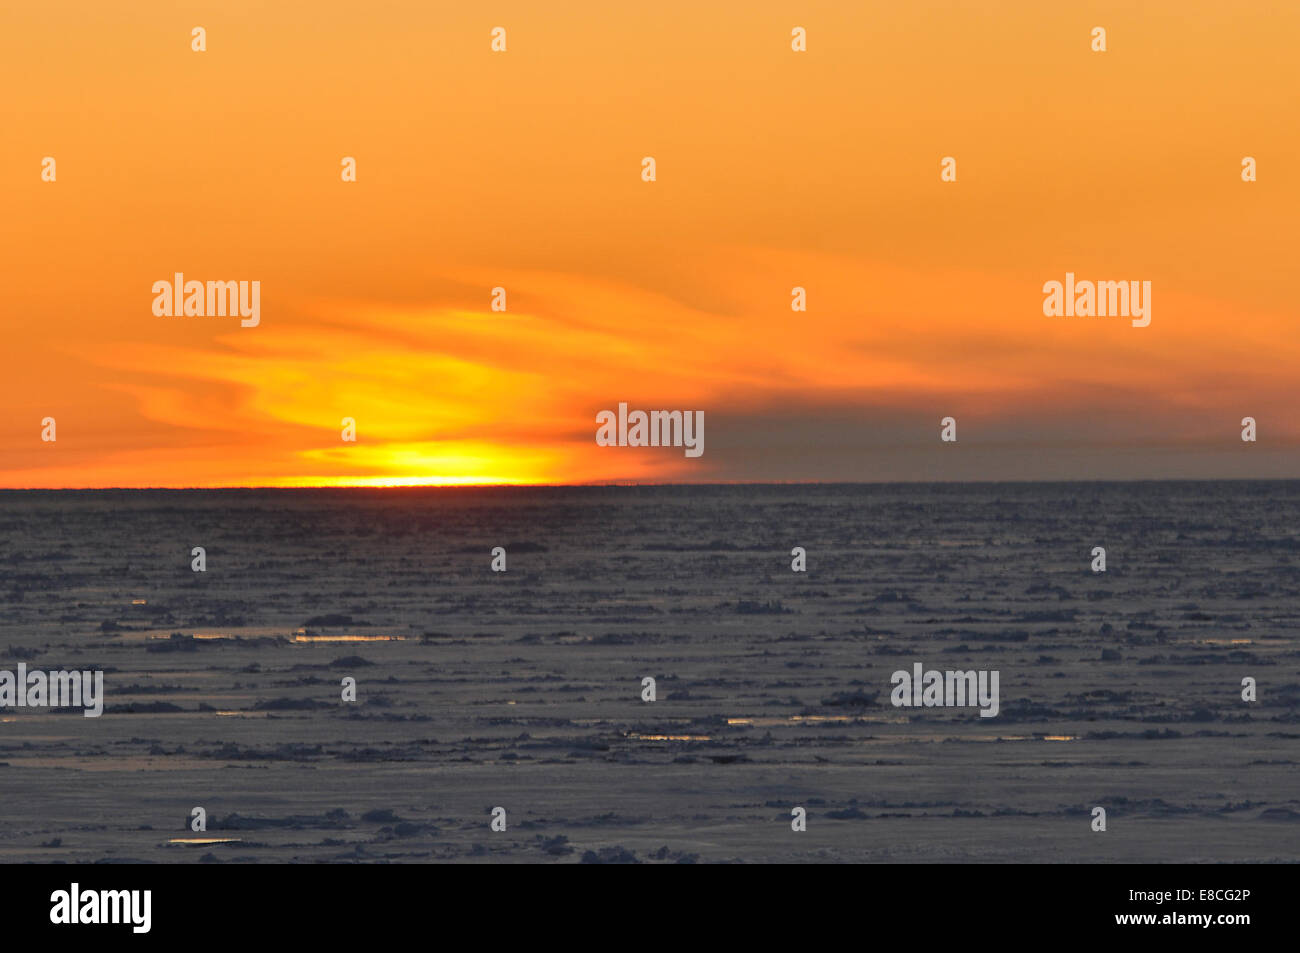 Arktis Sonnenuntergang taucht die Sonne unter dem Horizont 1. September 2009. Stockfoto